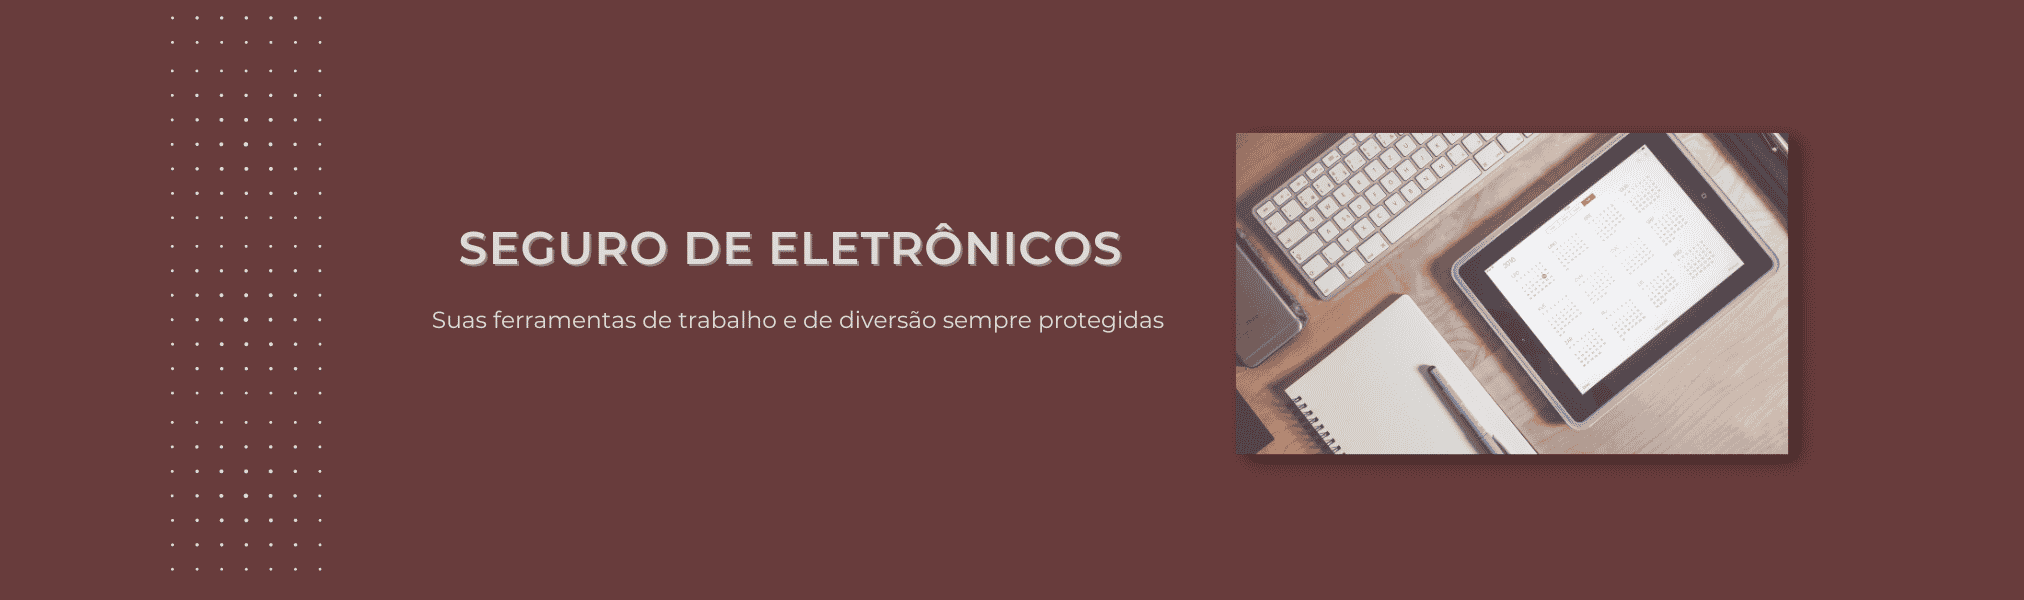 Banner Seguro de Eletronicos